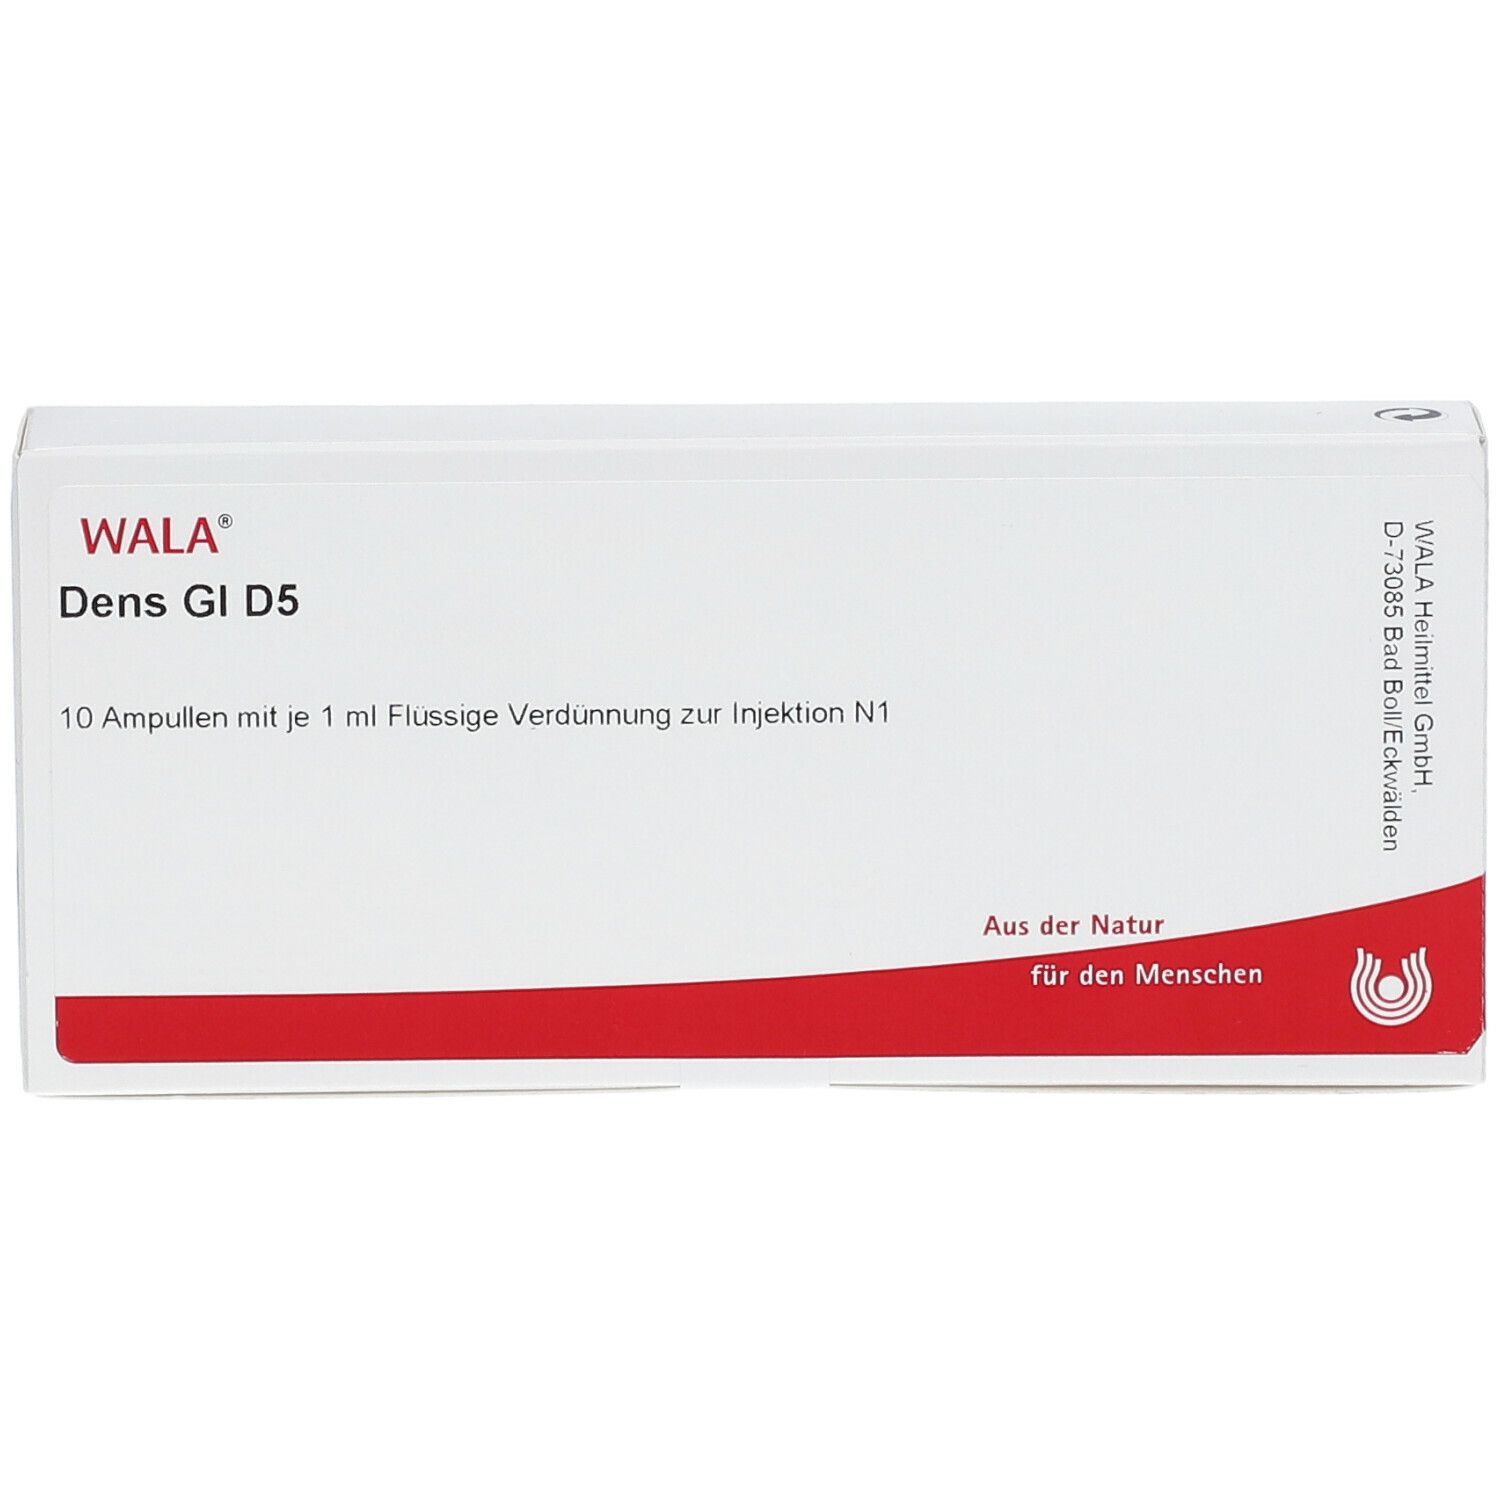 WALA® Dens Gl D 5